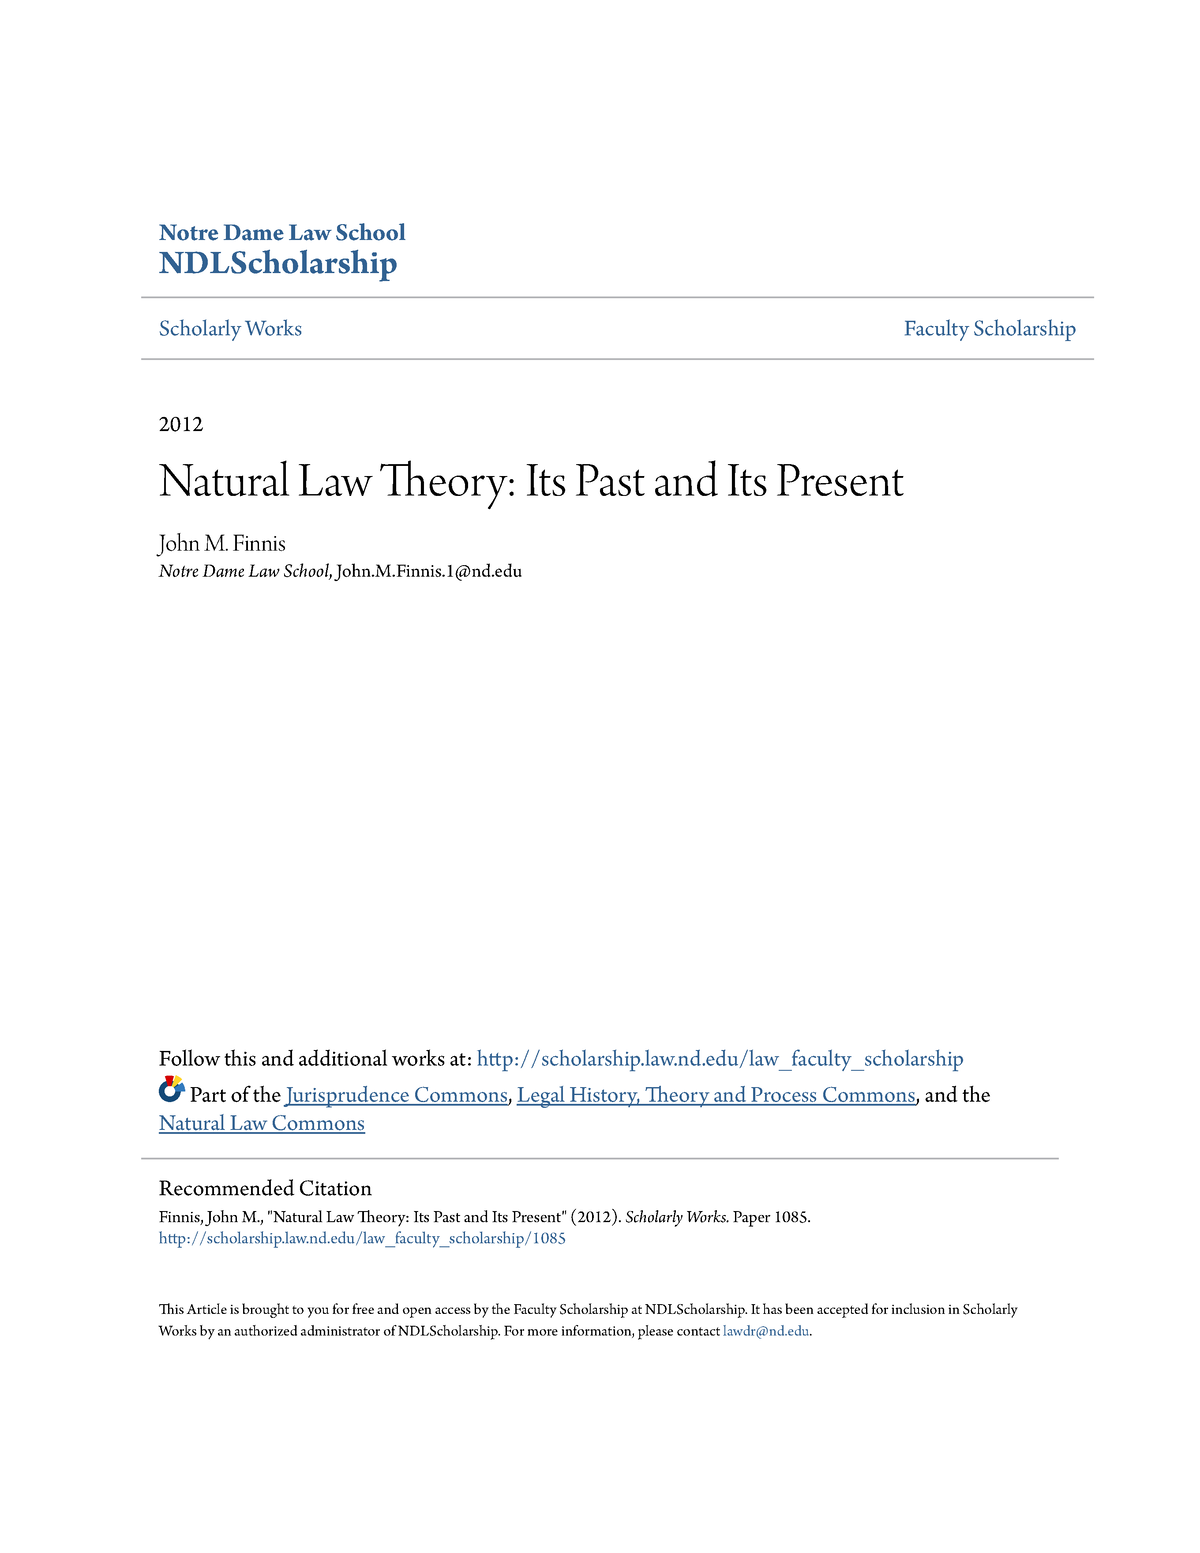 john finnis natural law essay